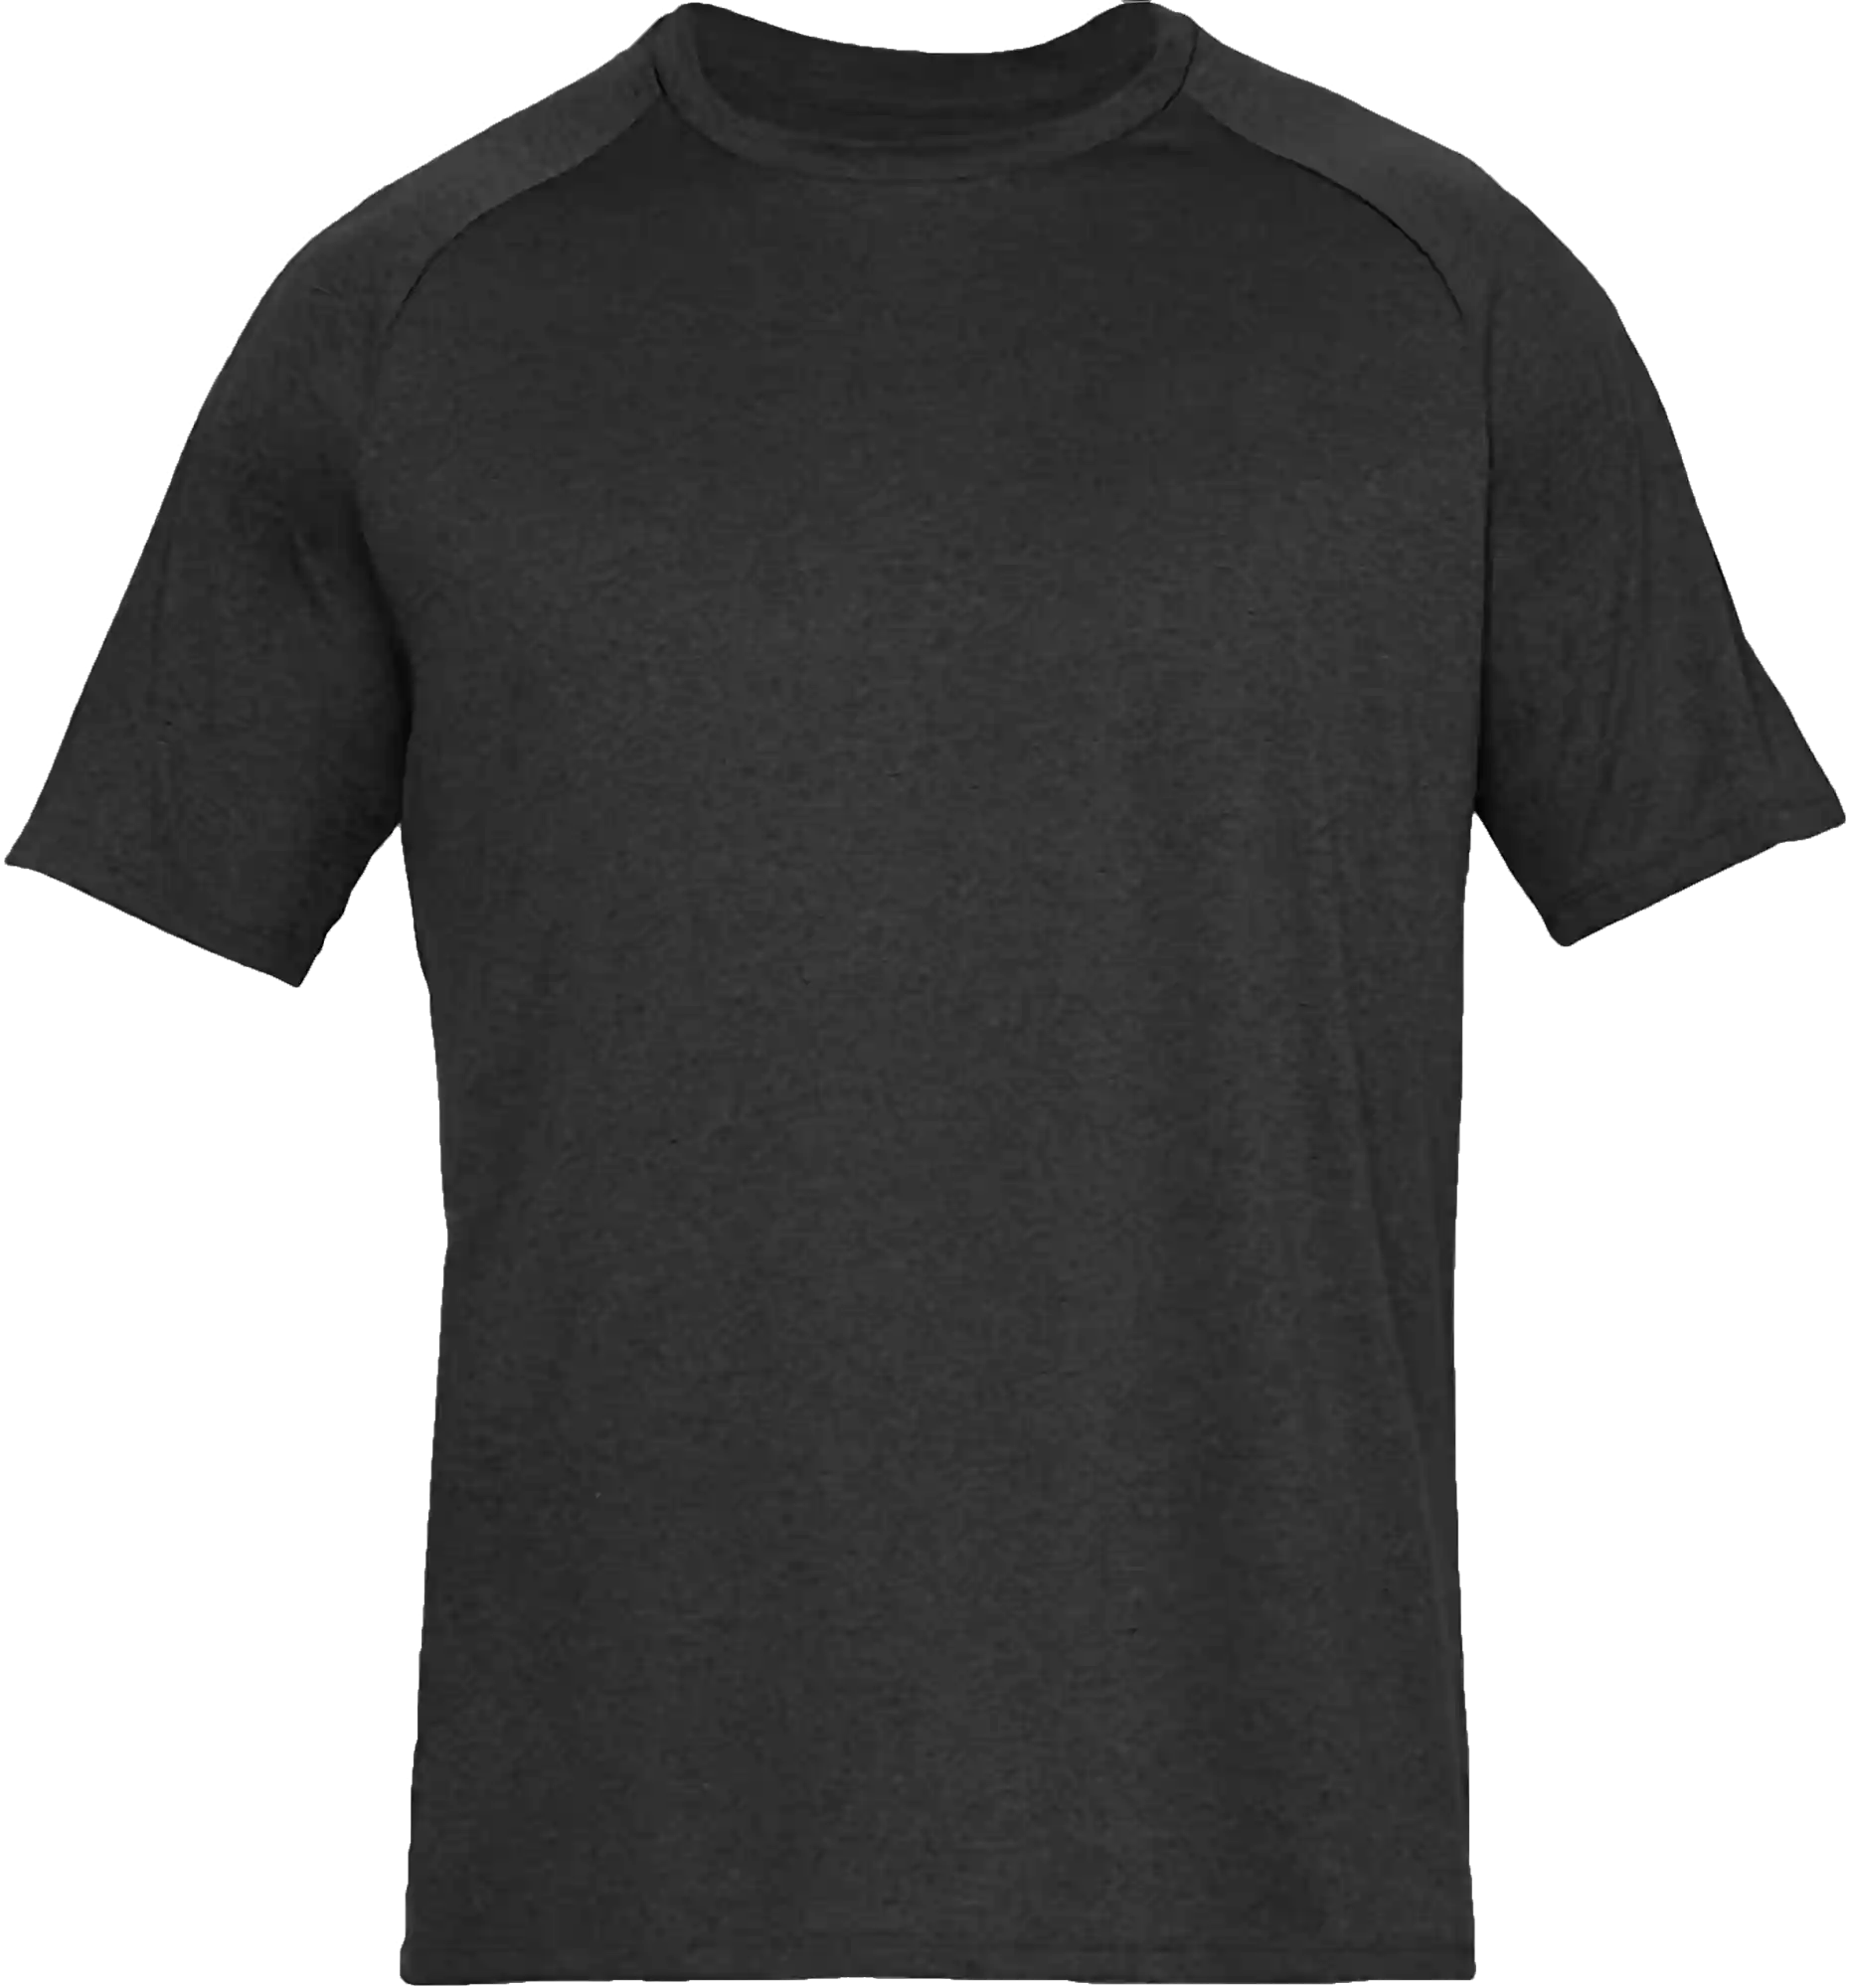 Black T Shirt PNG